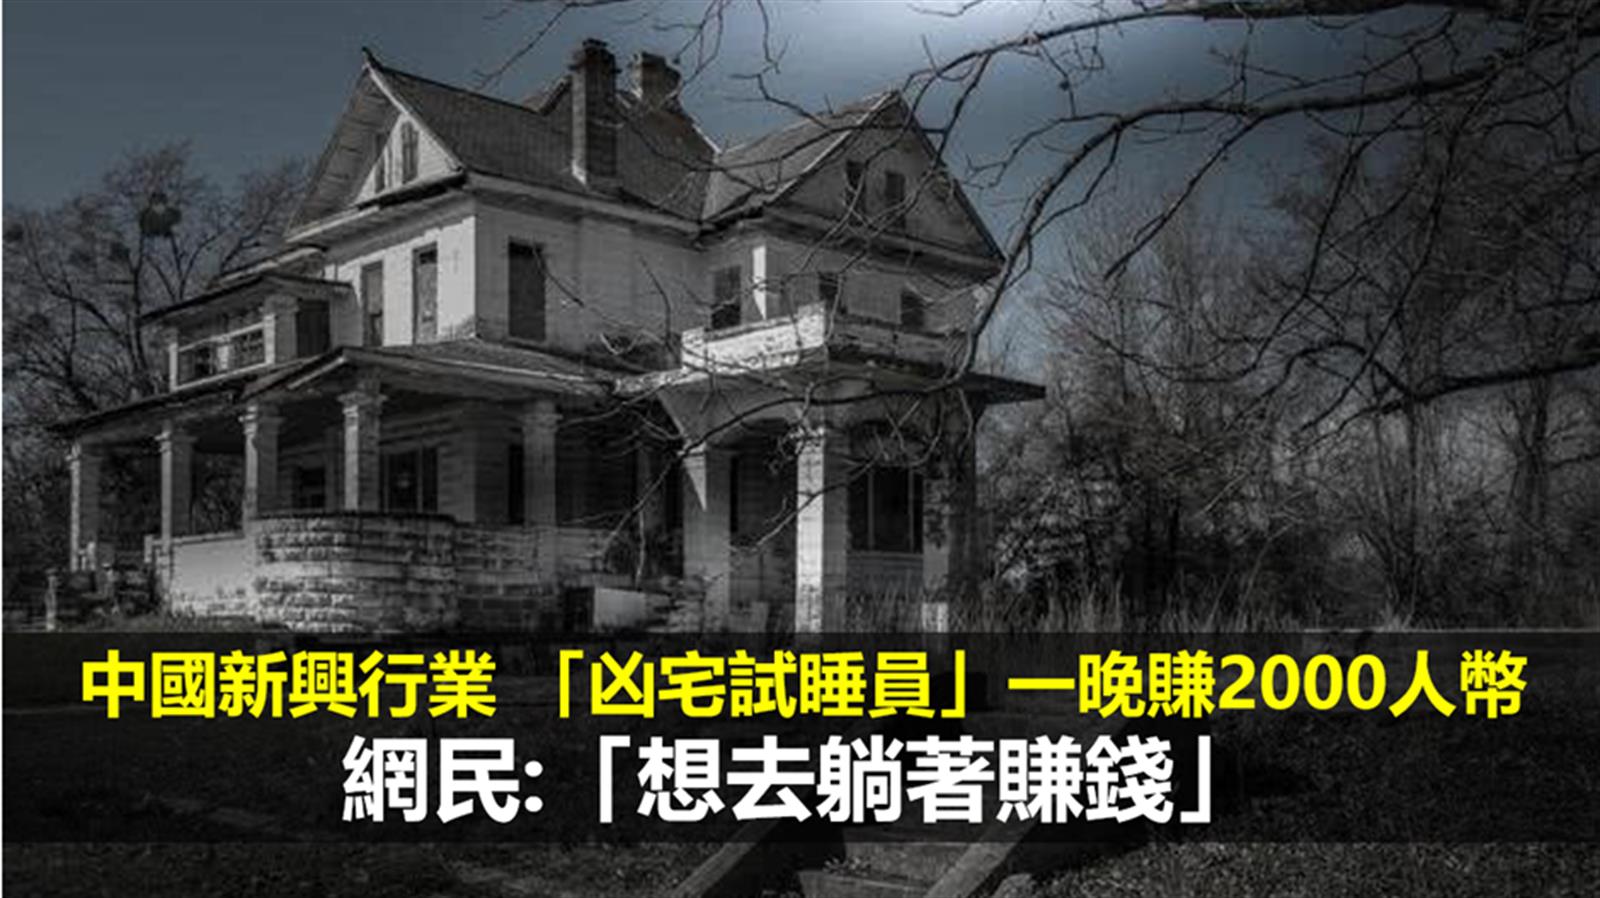 中國新興行業 「凶宅試睡員」一晚賺2000人幣  網民:「想去躺著賺錢」